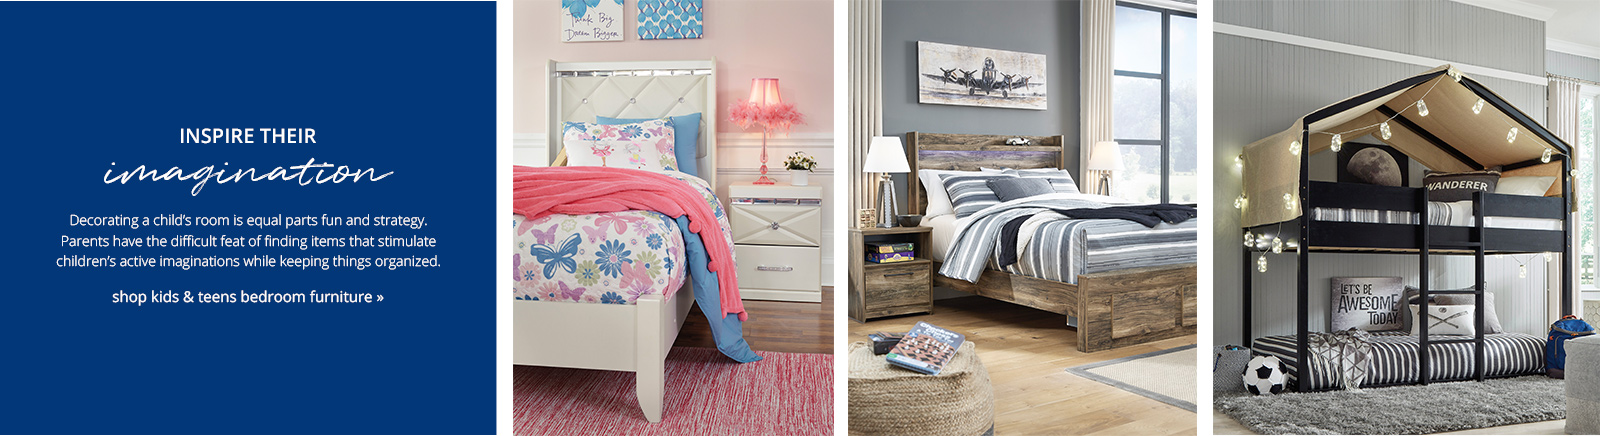 Shop Kids & Teens Bedroom Furniture